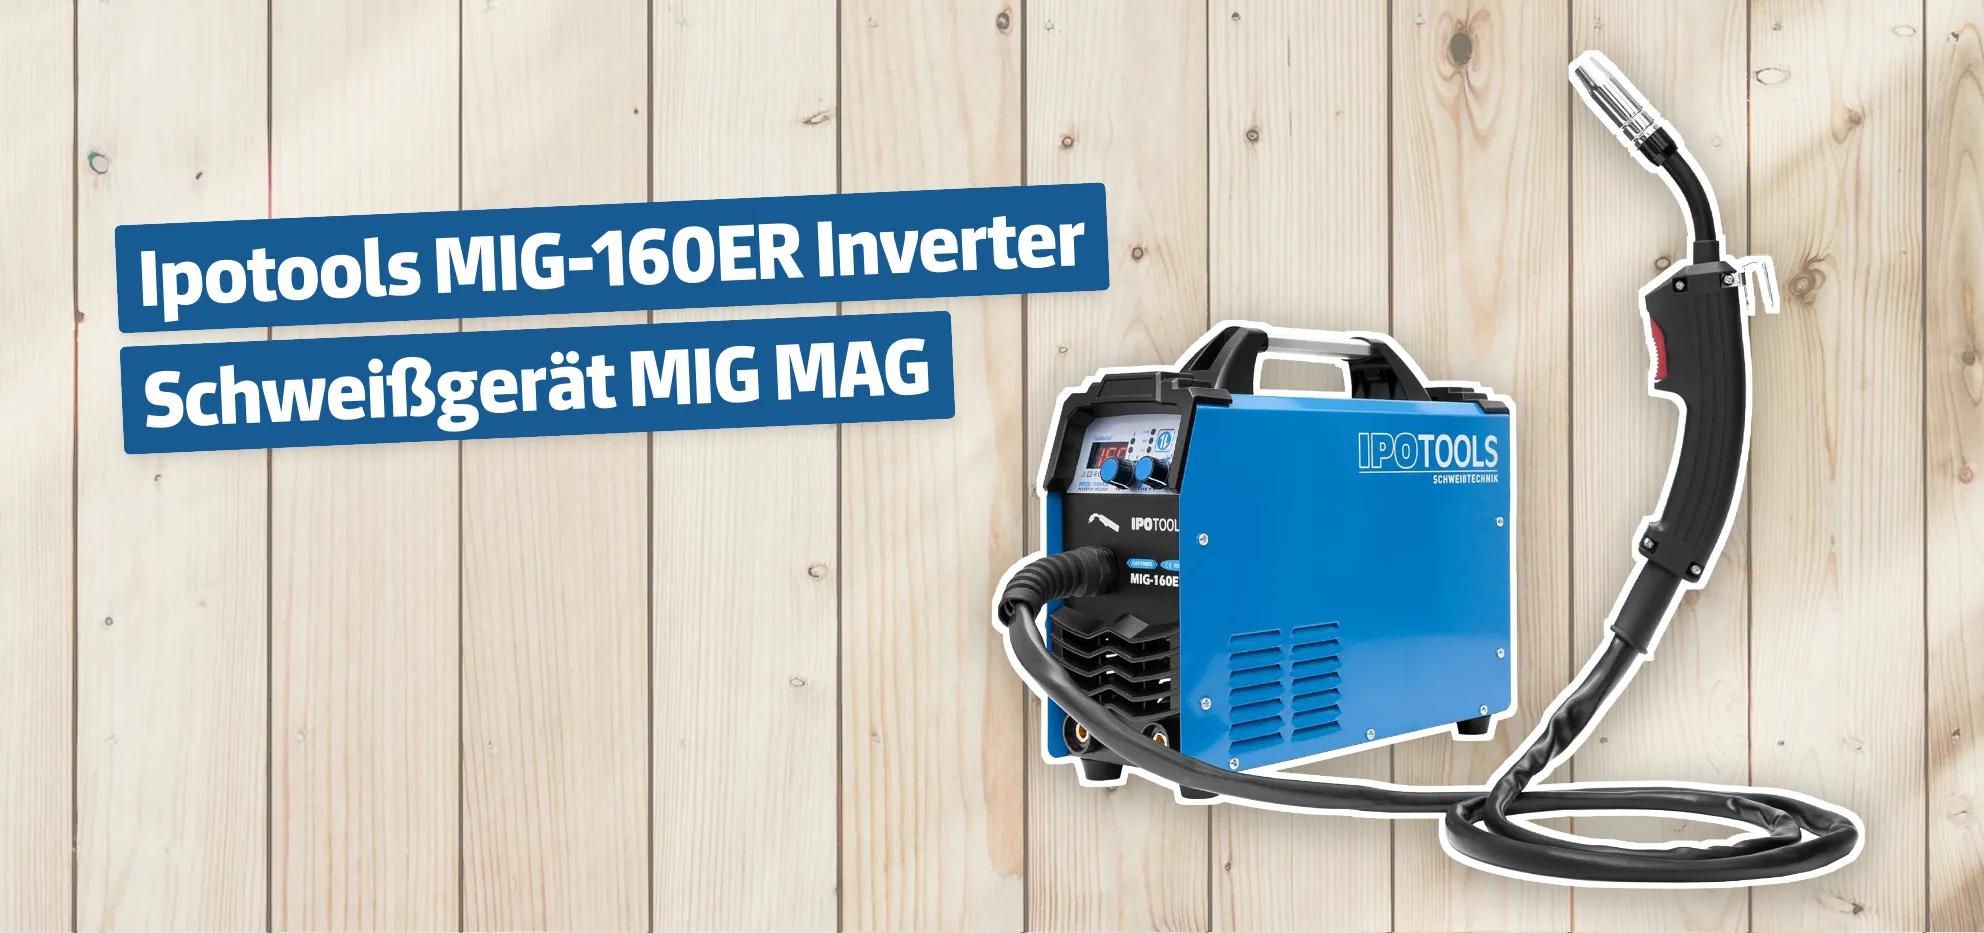 Ipotools MIG-160ER Inverter Schweißgerät MIG MAG